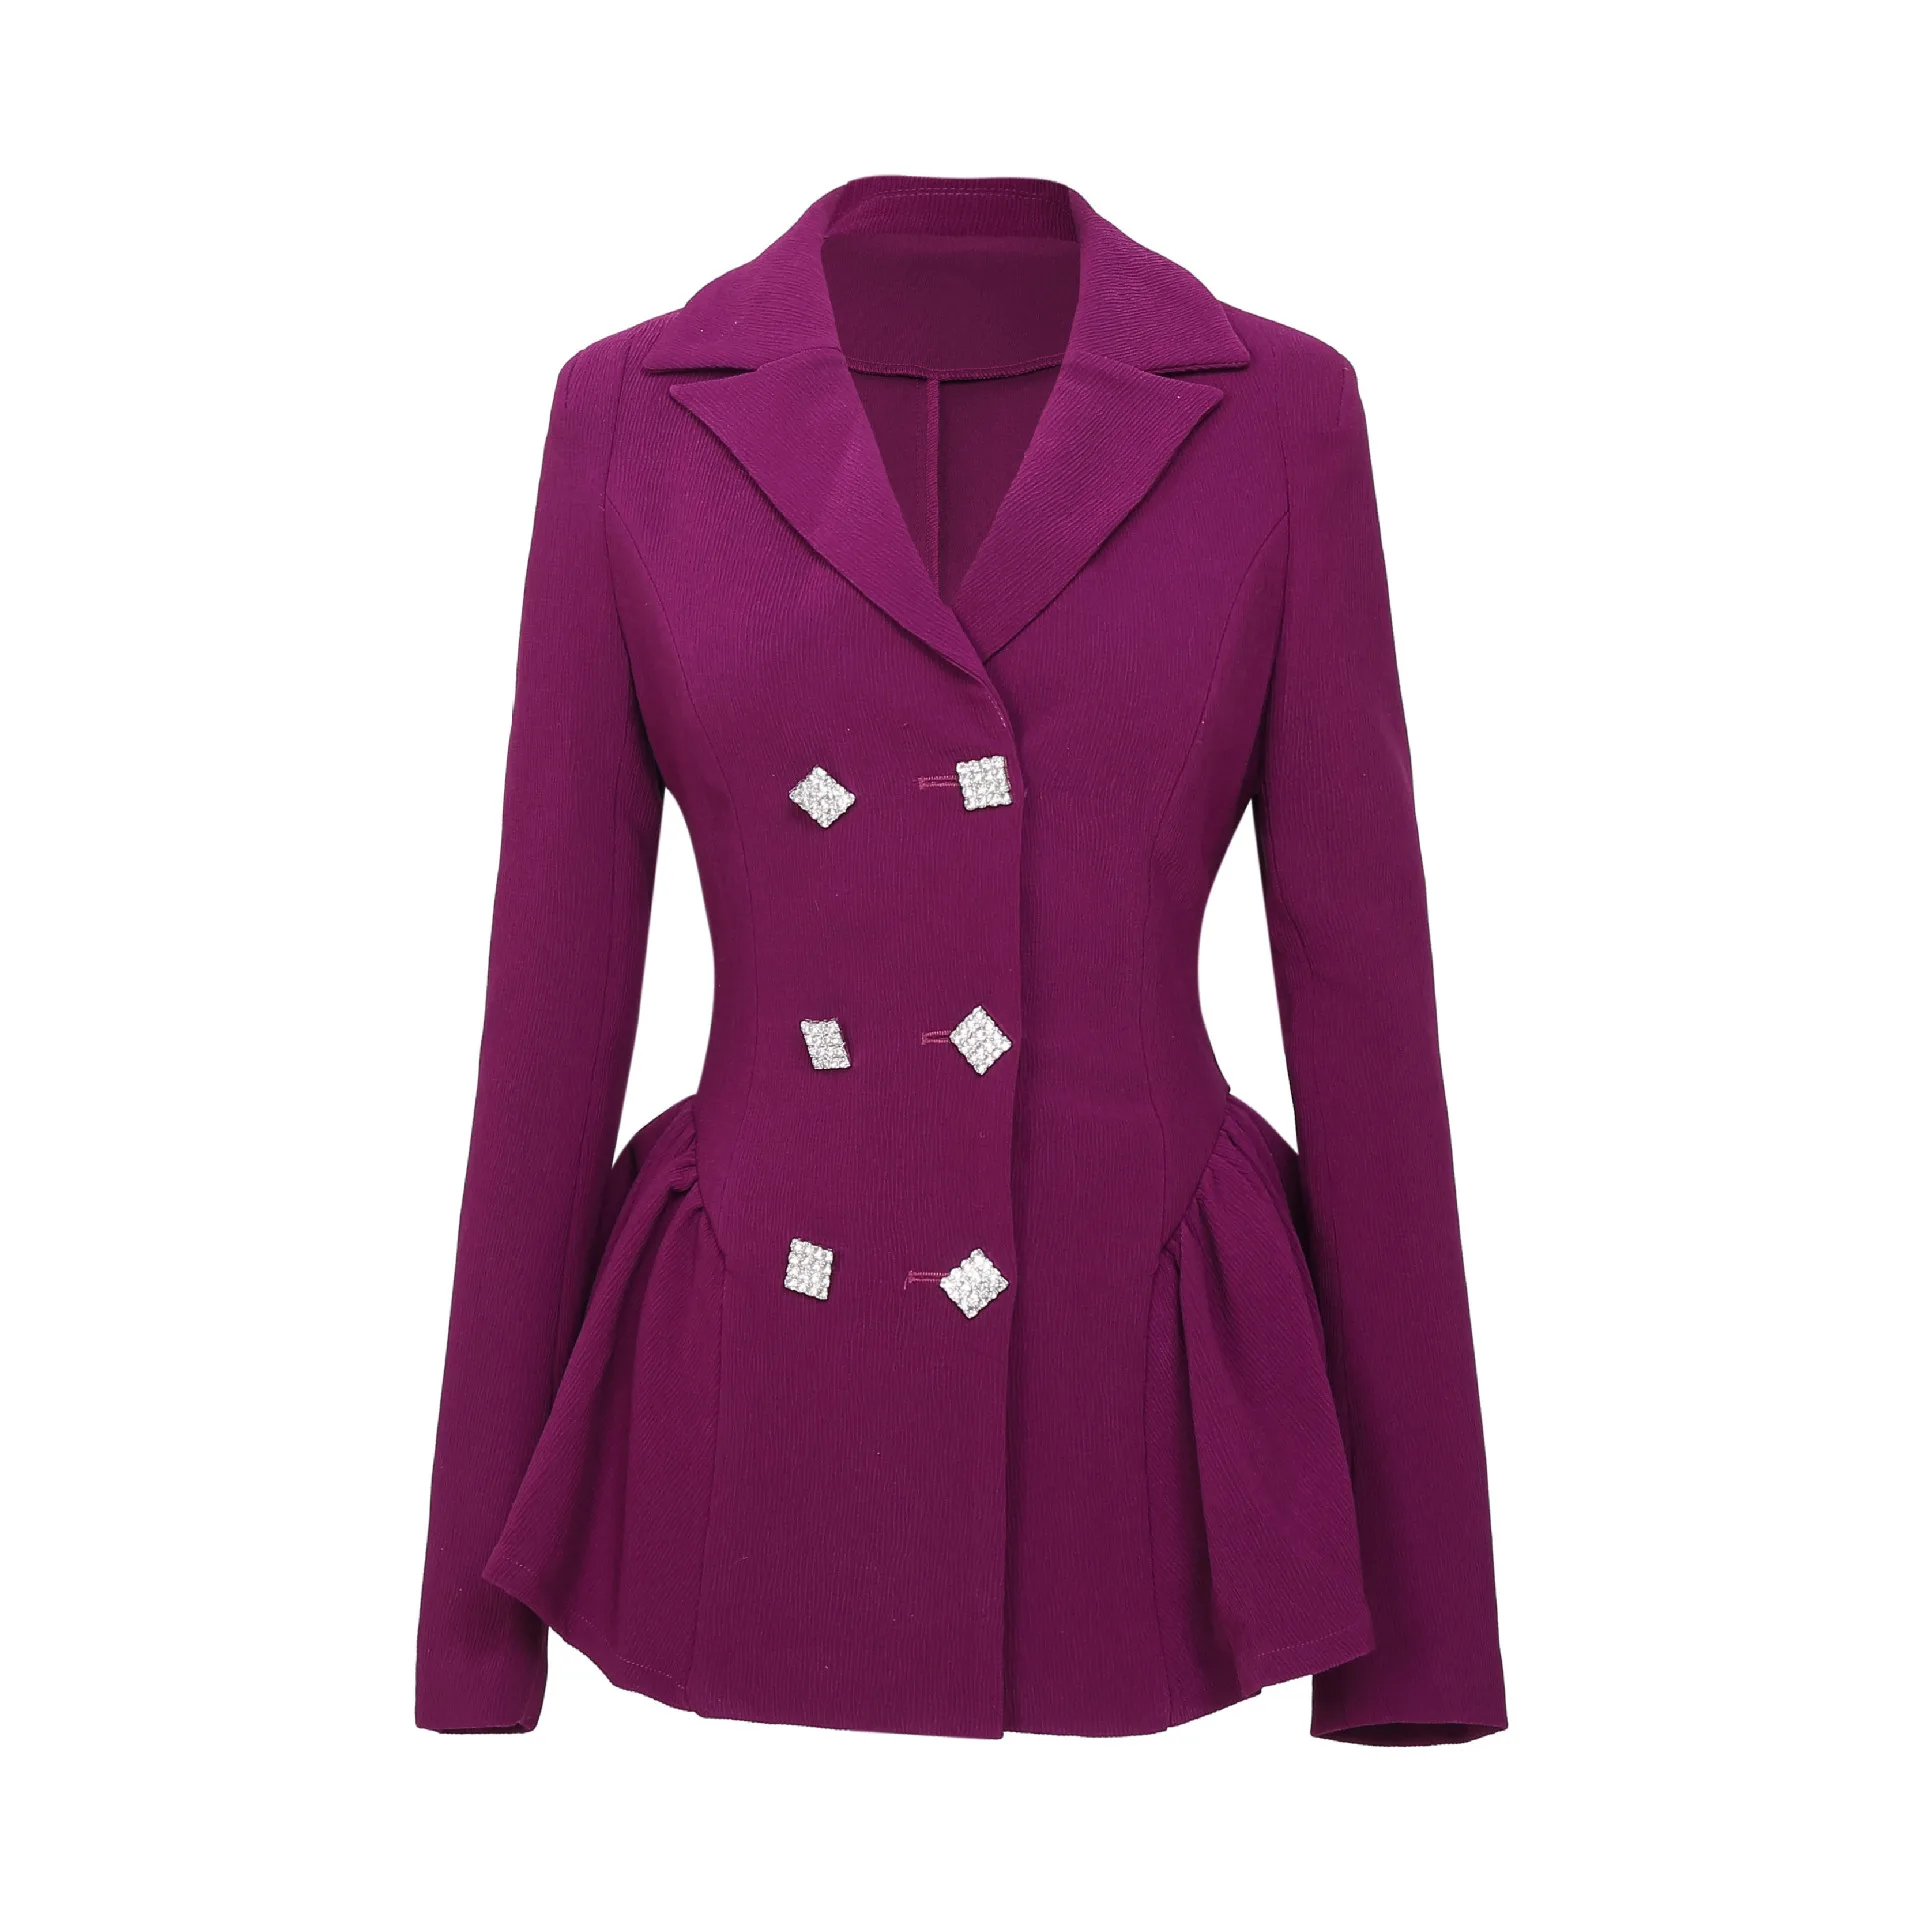 Office Wear Casual Long Sleeve Blazer Jacket Coat For Women Blazer Suit ...